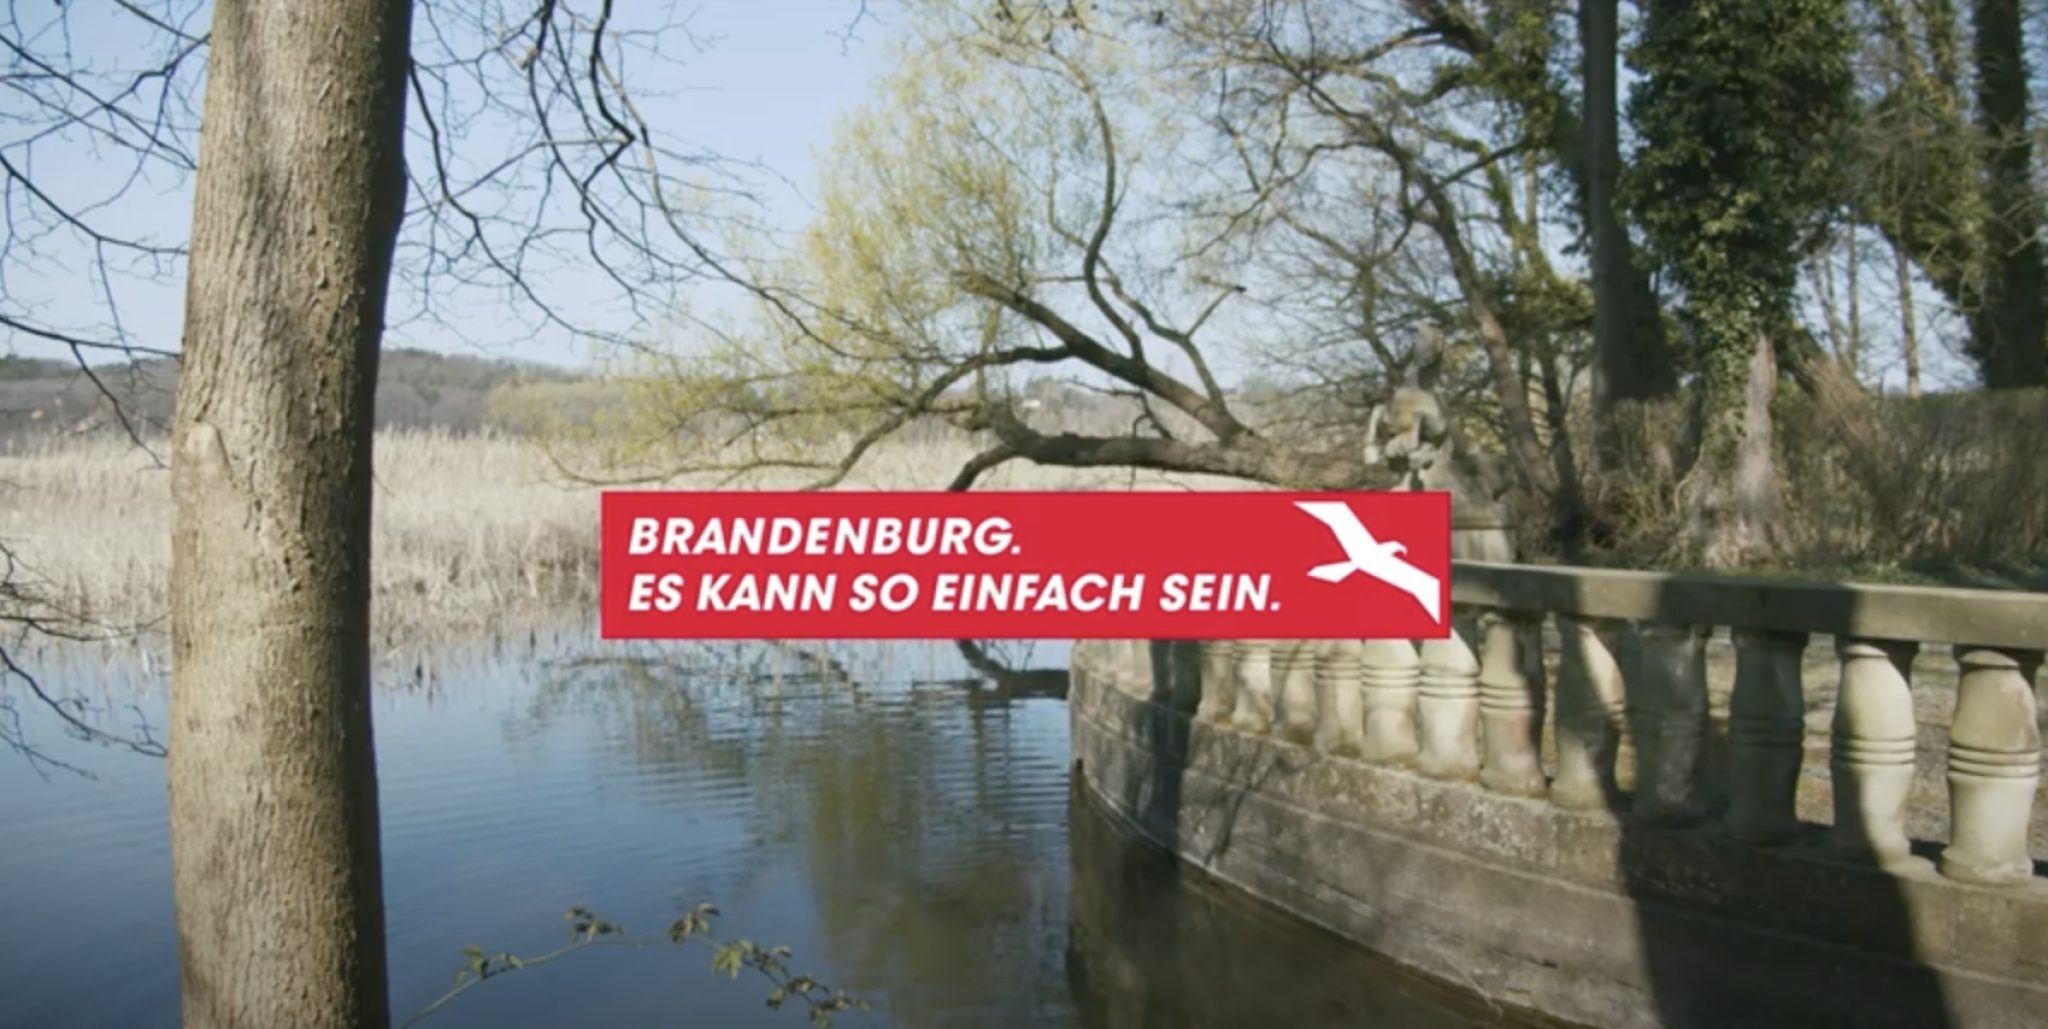 Ein See mit viel Schilf, links im Eck steht ein Baum. Auf der rechten Seite ist ein Geländer aus Stein und Bäume im Hintergrund. Im Vordergrund die Aufschrift "Brandenburg. Es kann so einfach sein."